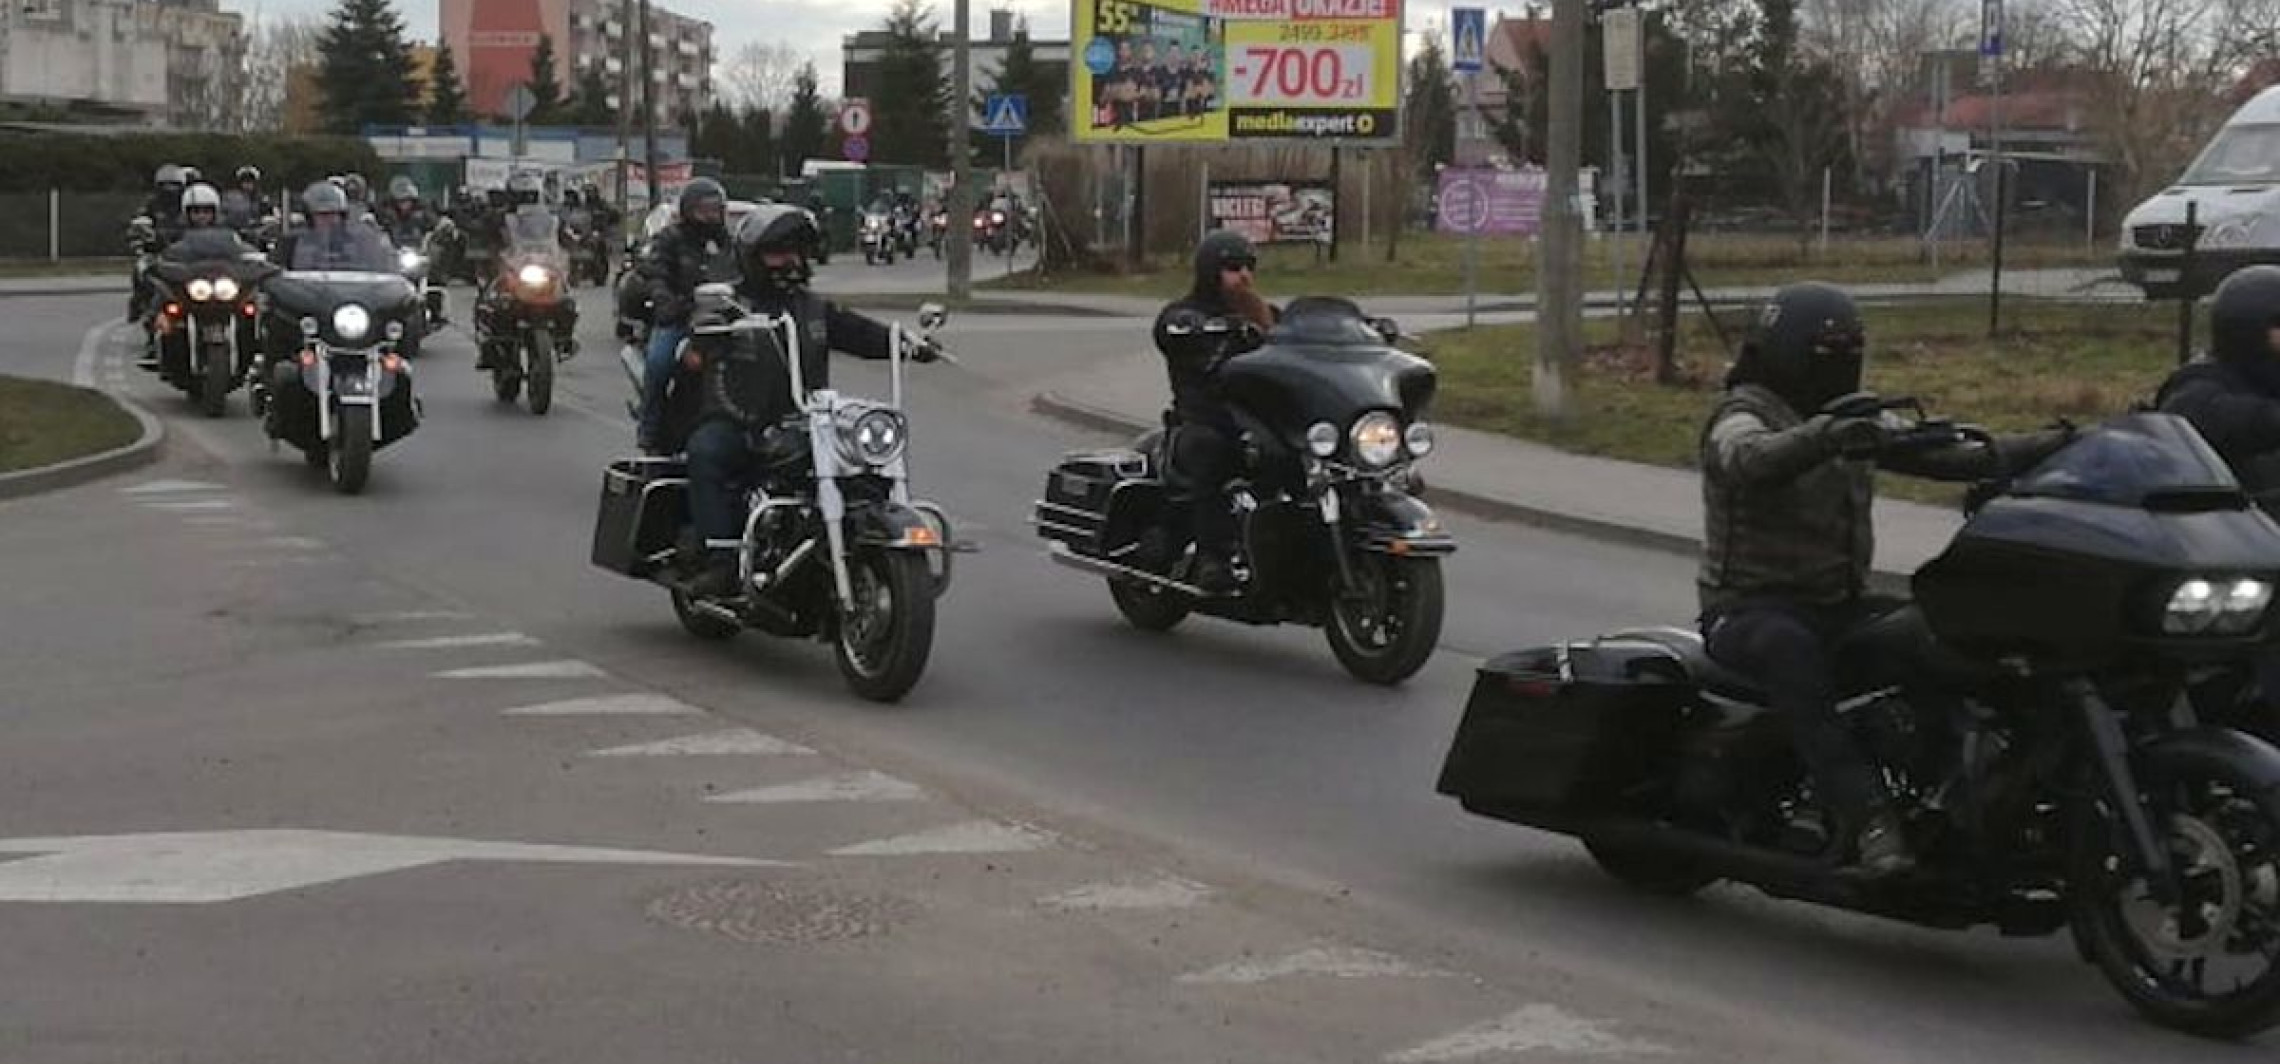 Kruszwica - Motocykliści pożegnali w Kruszwicy swojego kolegę